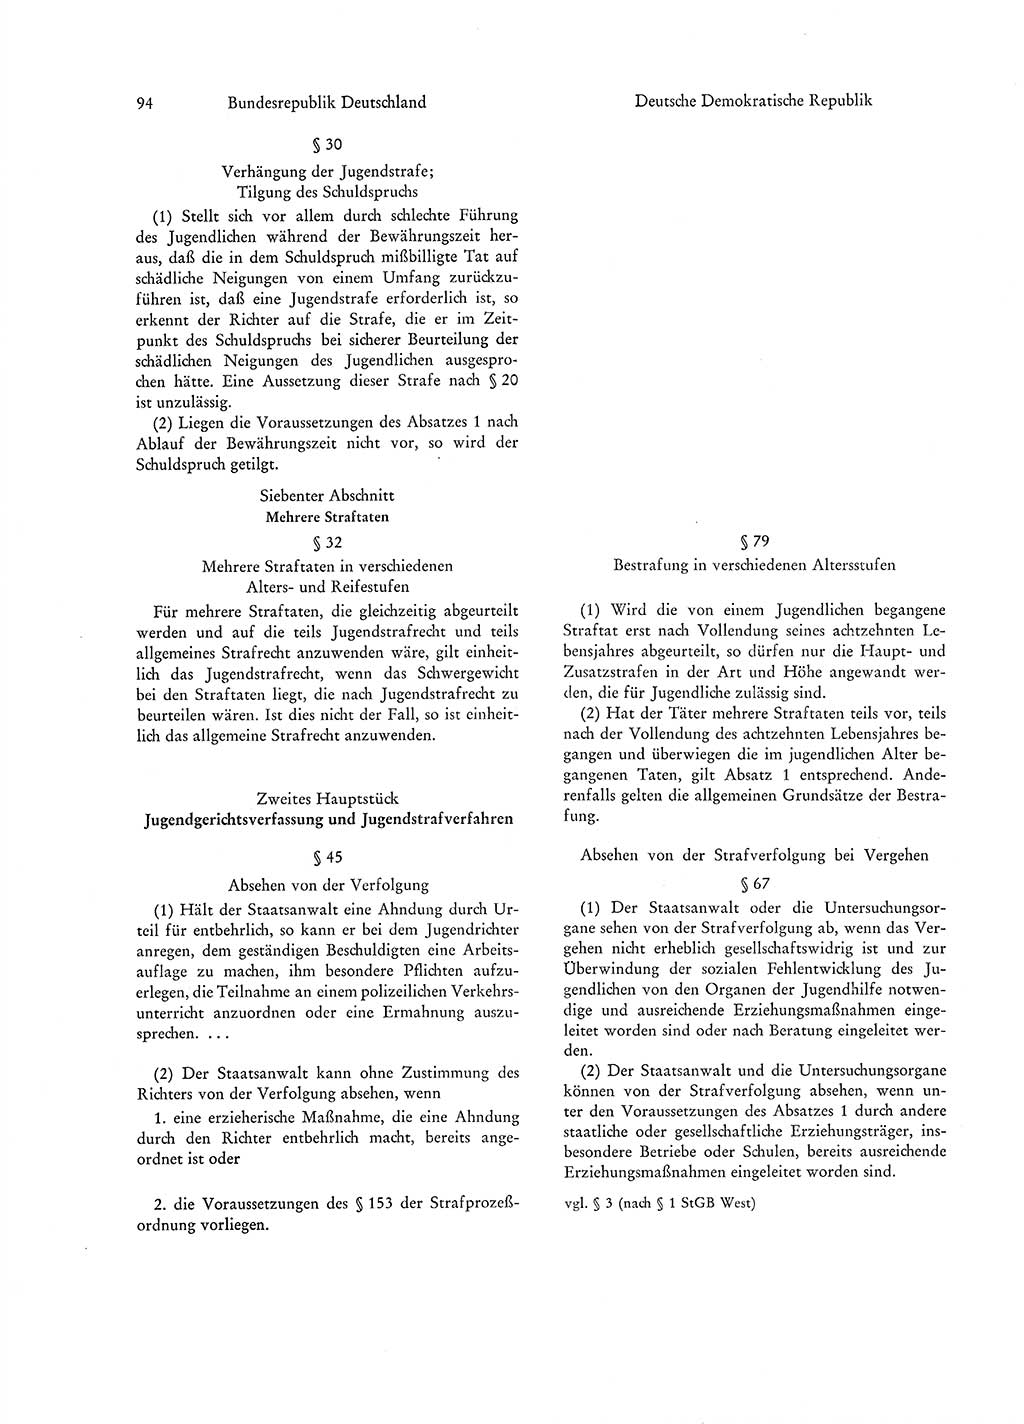 Strafgesetzgebung in Deutschland [Bundesrepublik Deutschland (BRD) und Deutsche Demokratische Republik (DDR)] 1972, Seite 94 (Str.-Ges. Dtl. StGB BRD DDR 1972, S. 94)